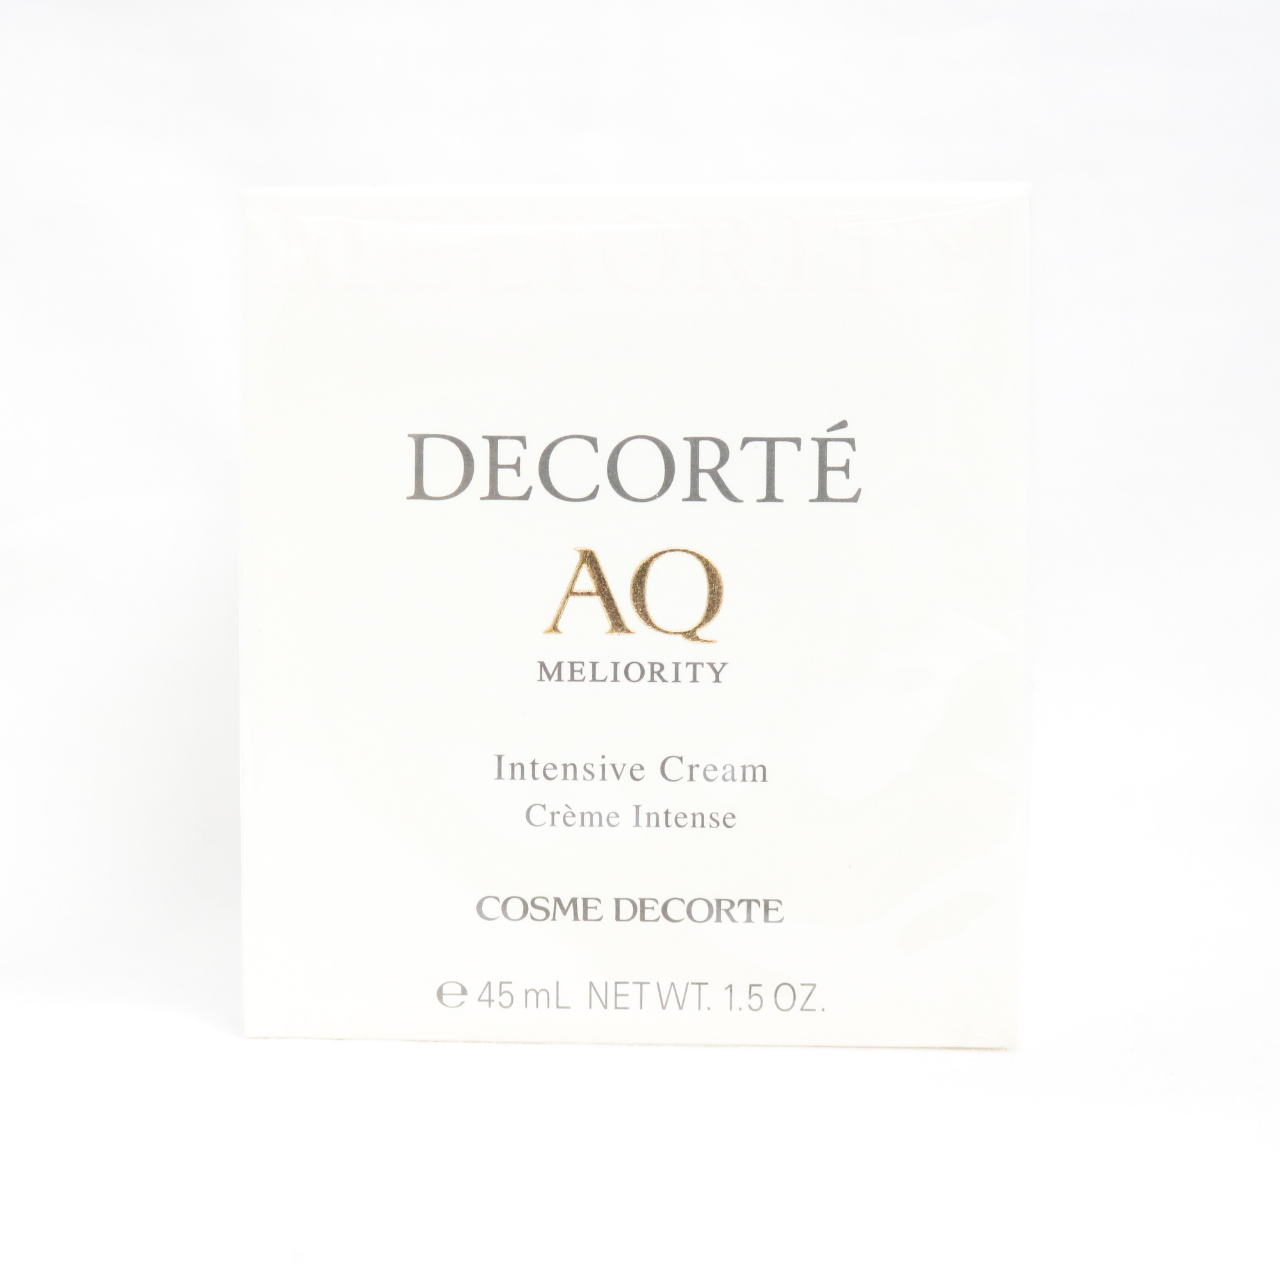 DECORTE コスメデコルテ AQ ミリオリティ インテンシブ クリーム 45g スキンケアクリームの商品画像